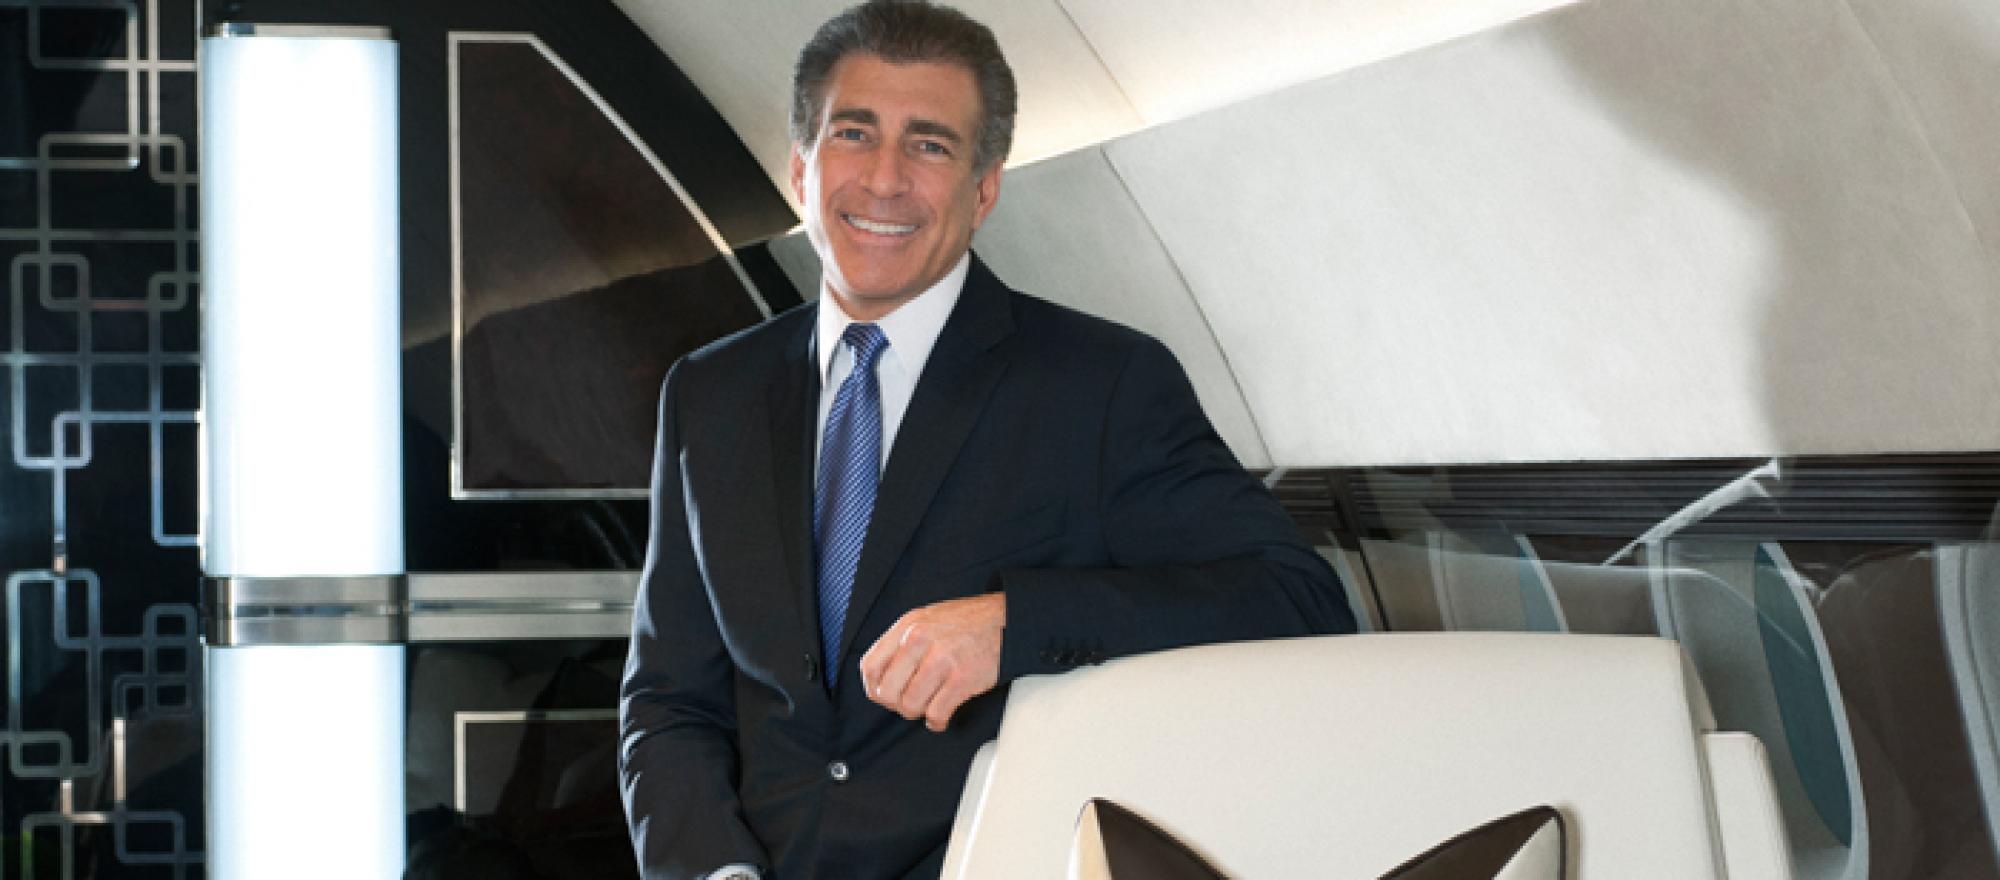 Steve Varsano, Owner of The Jet Business